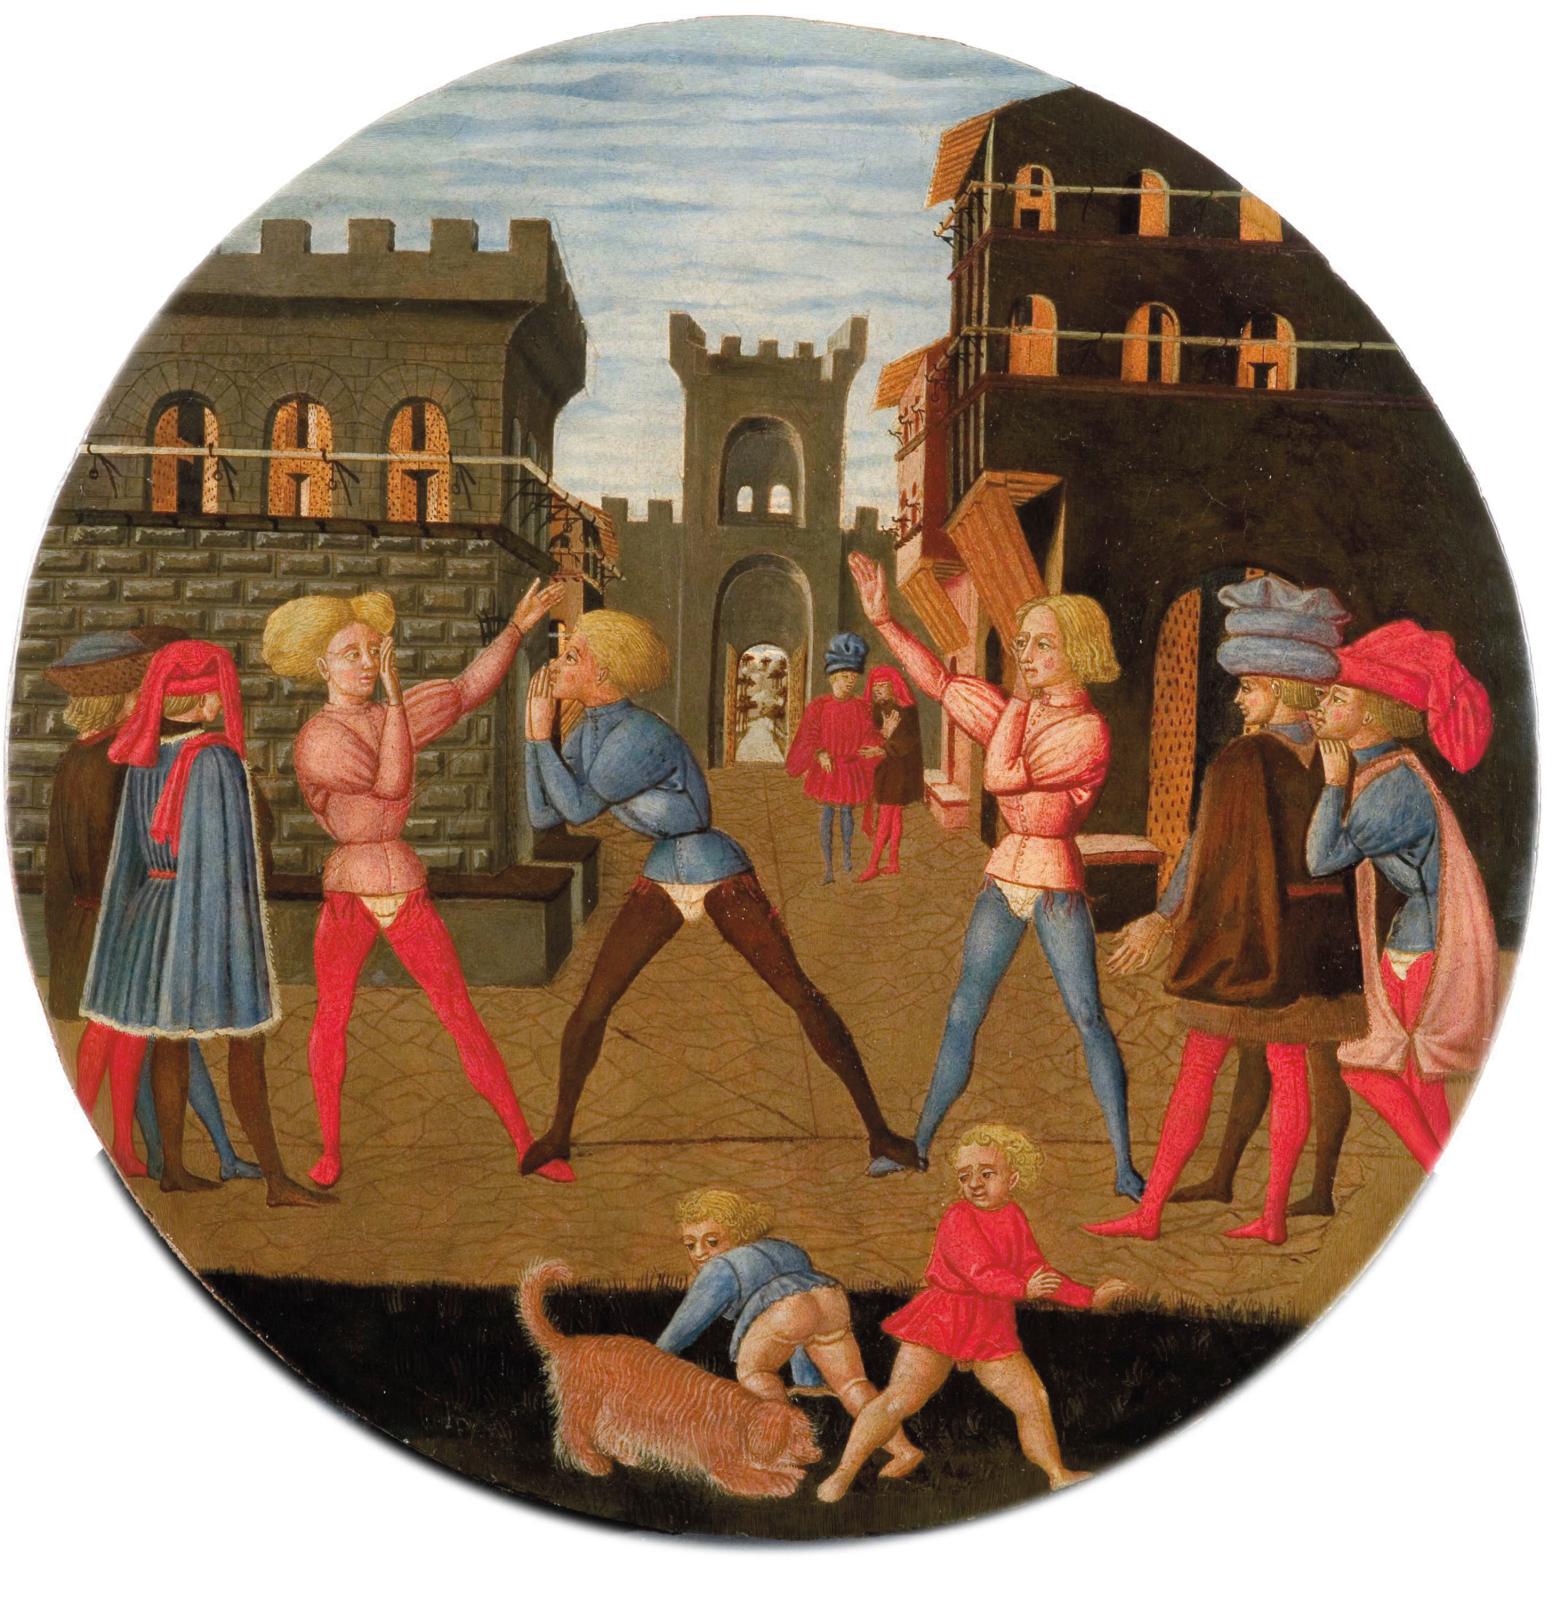 Lo Scheggia, Plateau d’accouchée représentant le jeu du civettino, Florence, vers 1450, tempera sur bois de peuplier. © Musée du Bargello-